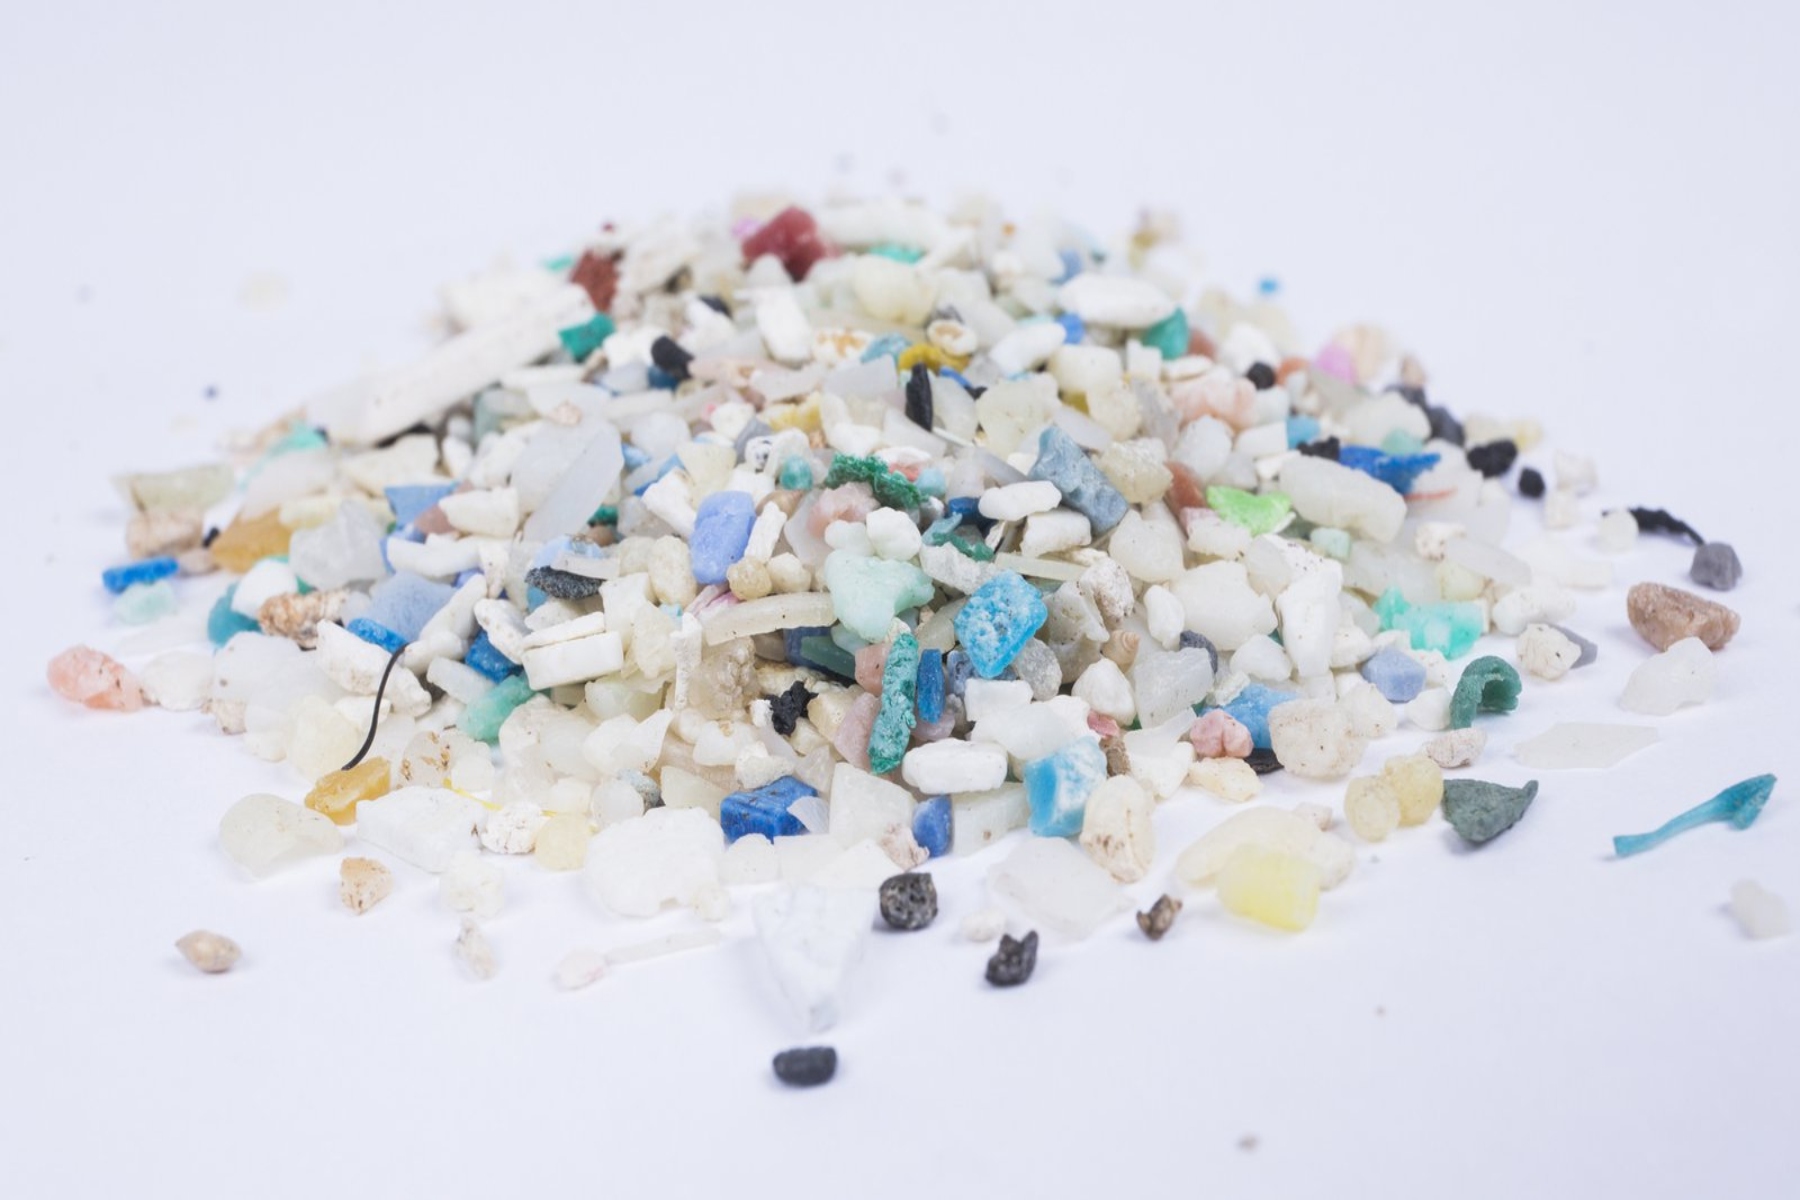 Μικροπλαστικά υγεία: Εισπνέουμε μικροπλαστικά σε ποσότητες που οδηγούν σε προβλήματα υγείας